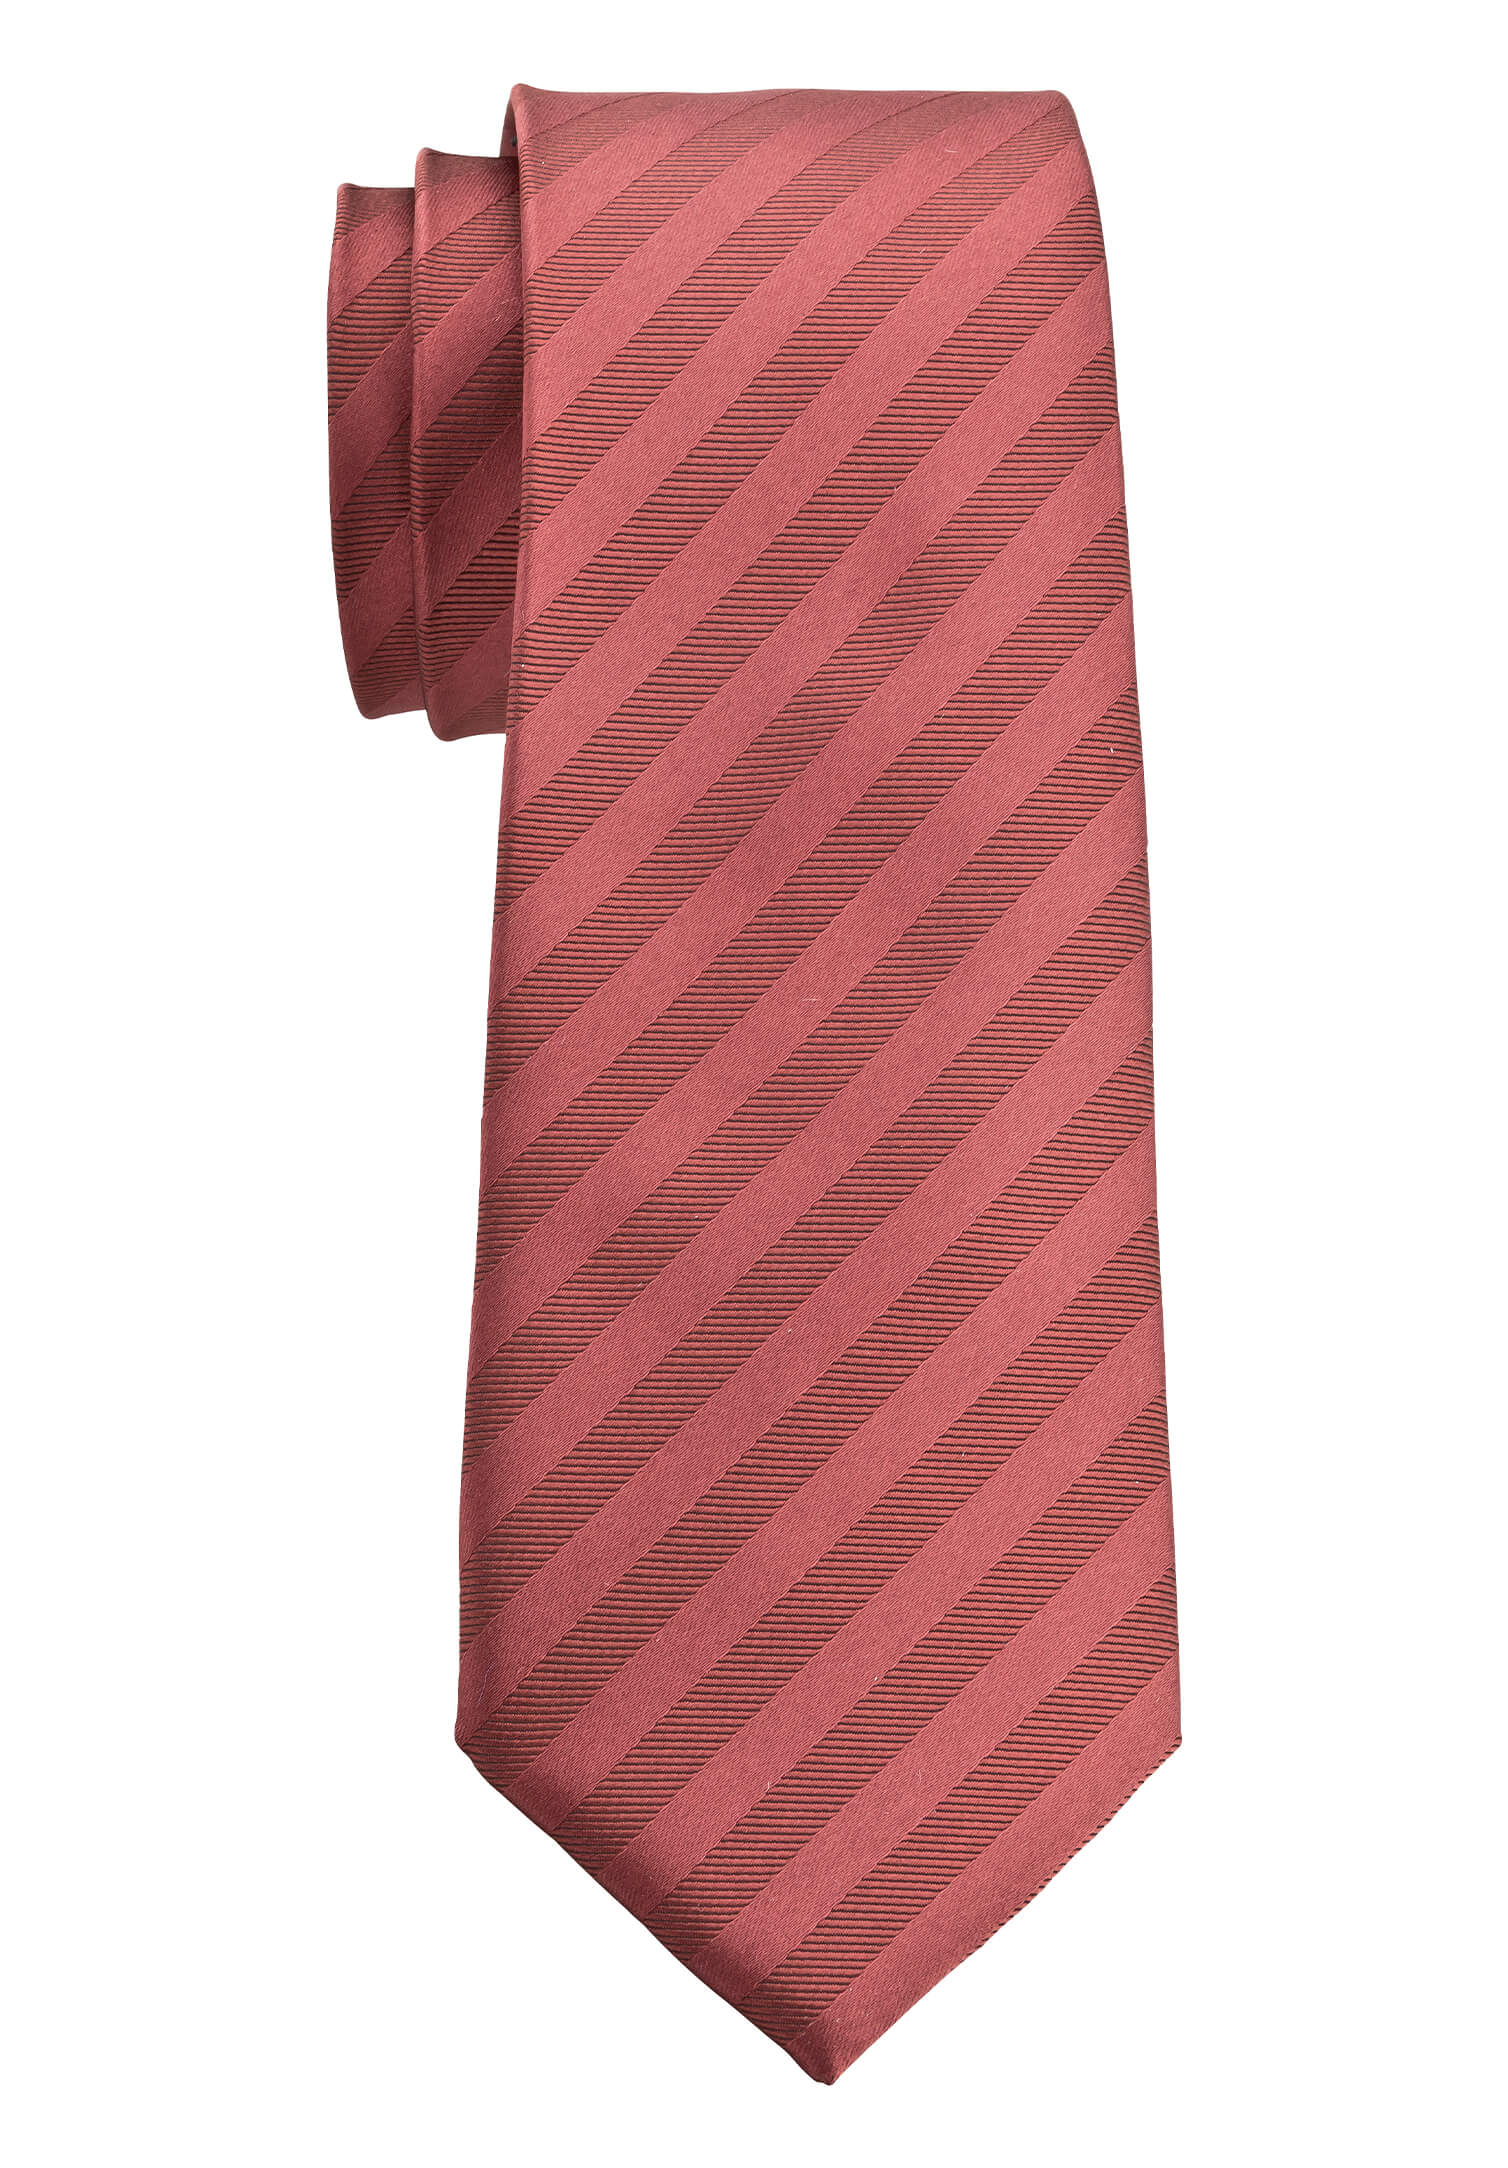 Krawatte rot/bordeaux gestreift